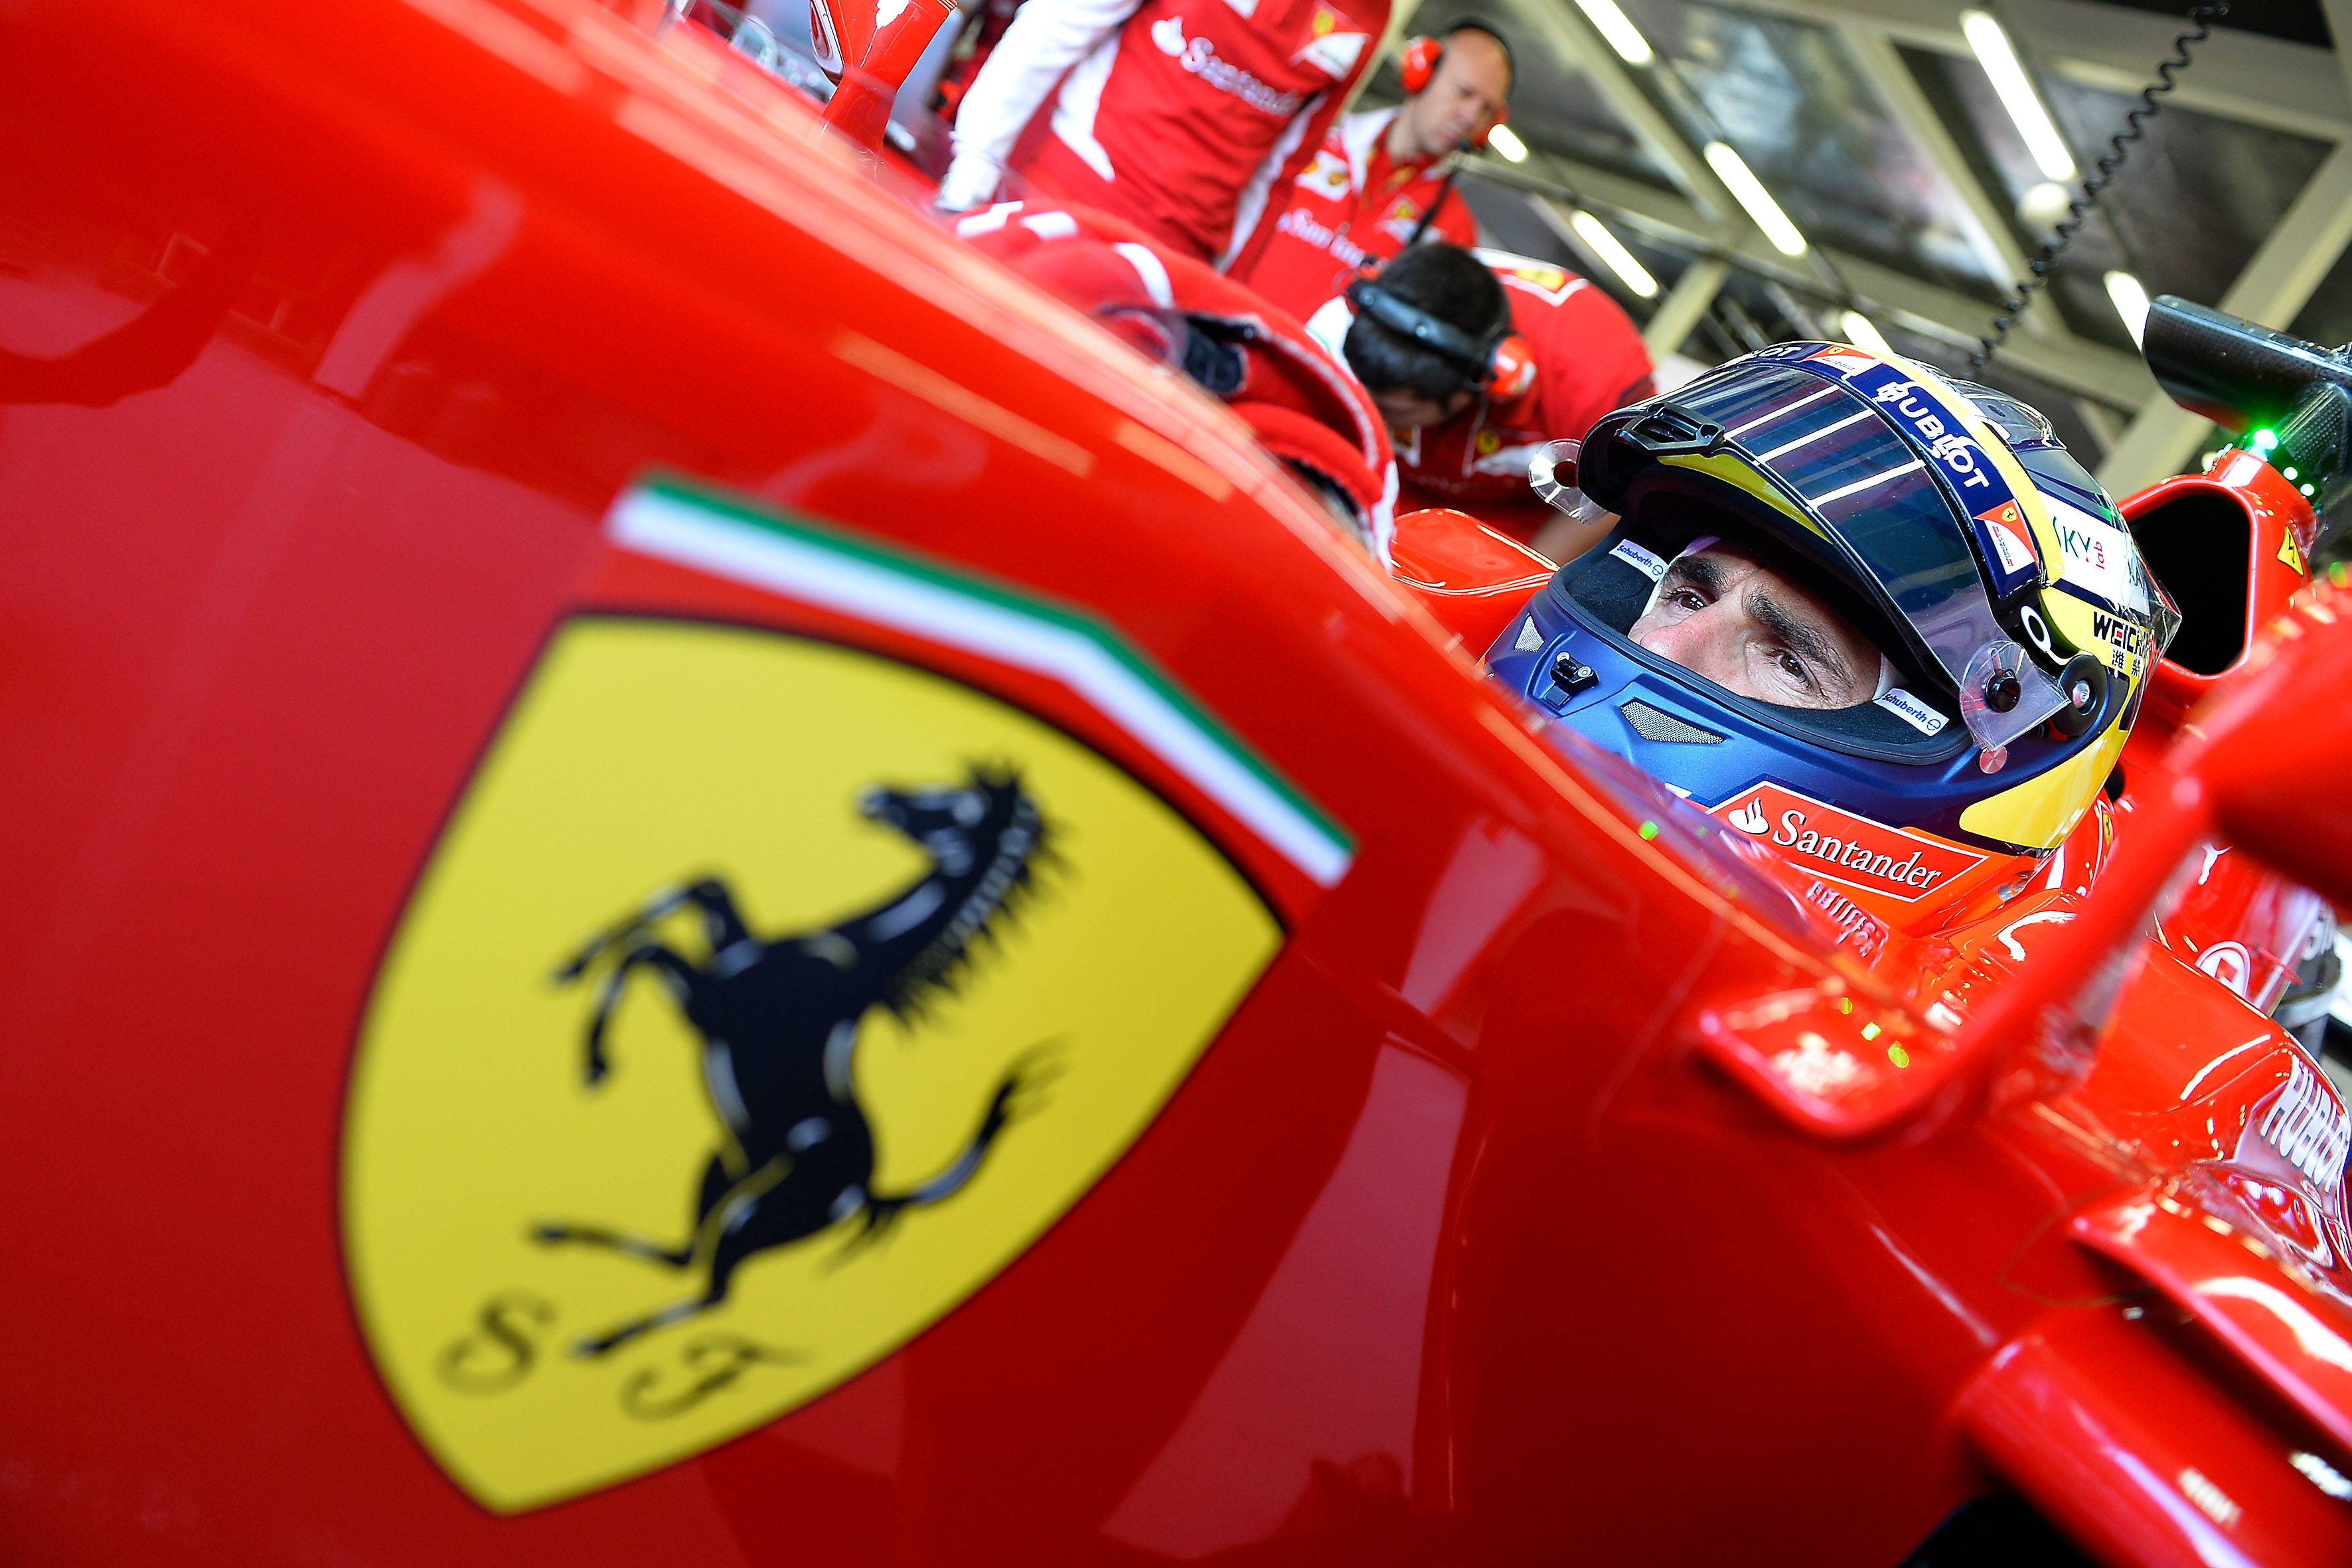  FCA annuncia l’esercizio integrale da parte delle banche collocatrici dell’opzione di acquisto di azioni Ferrari